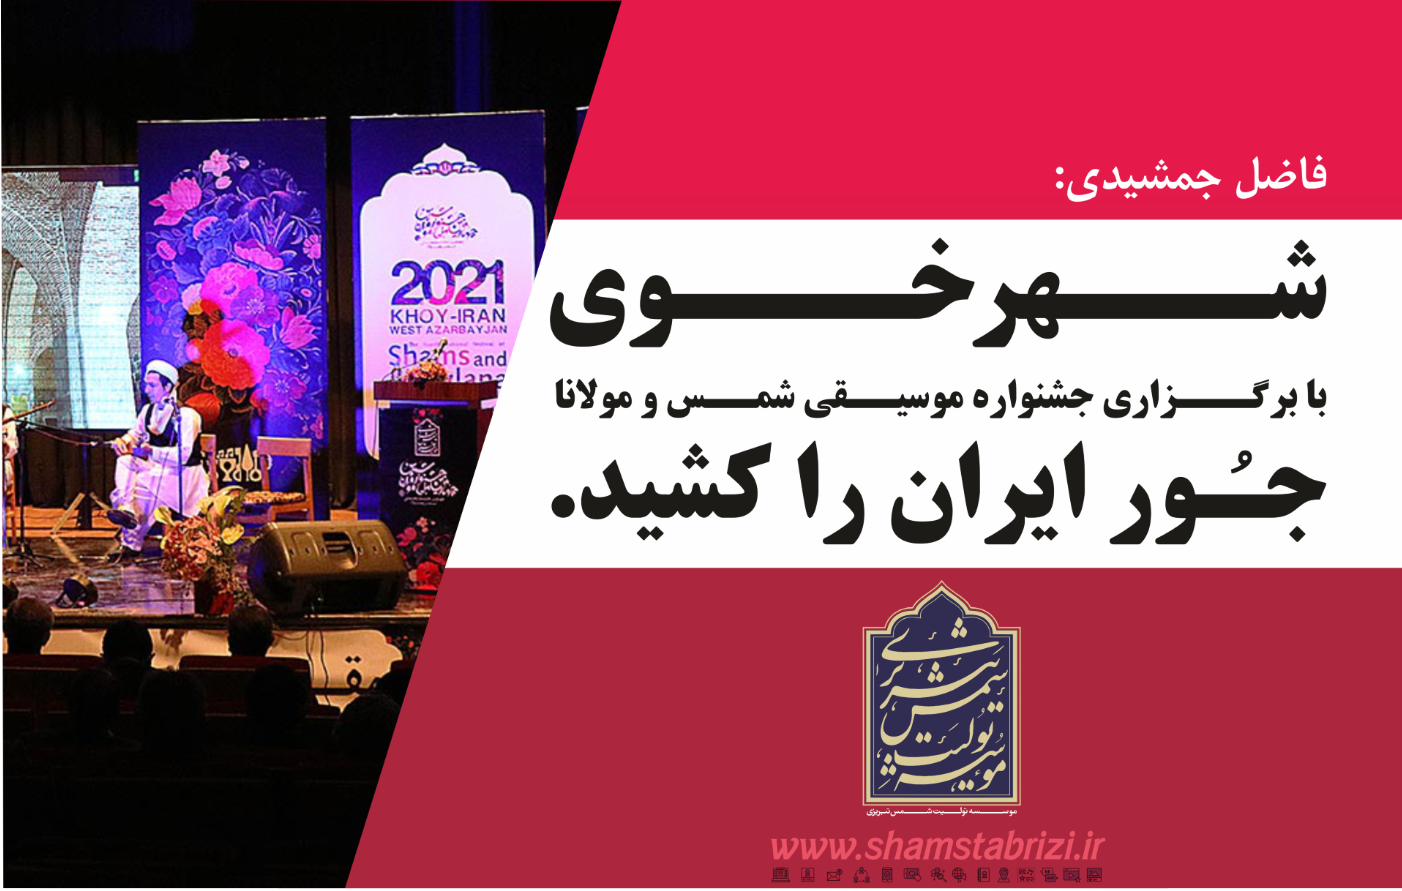 شهر خوی با برگزاری جشنواره موسیقی شمس و مولانا جـُور ایران را کشید.